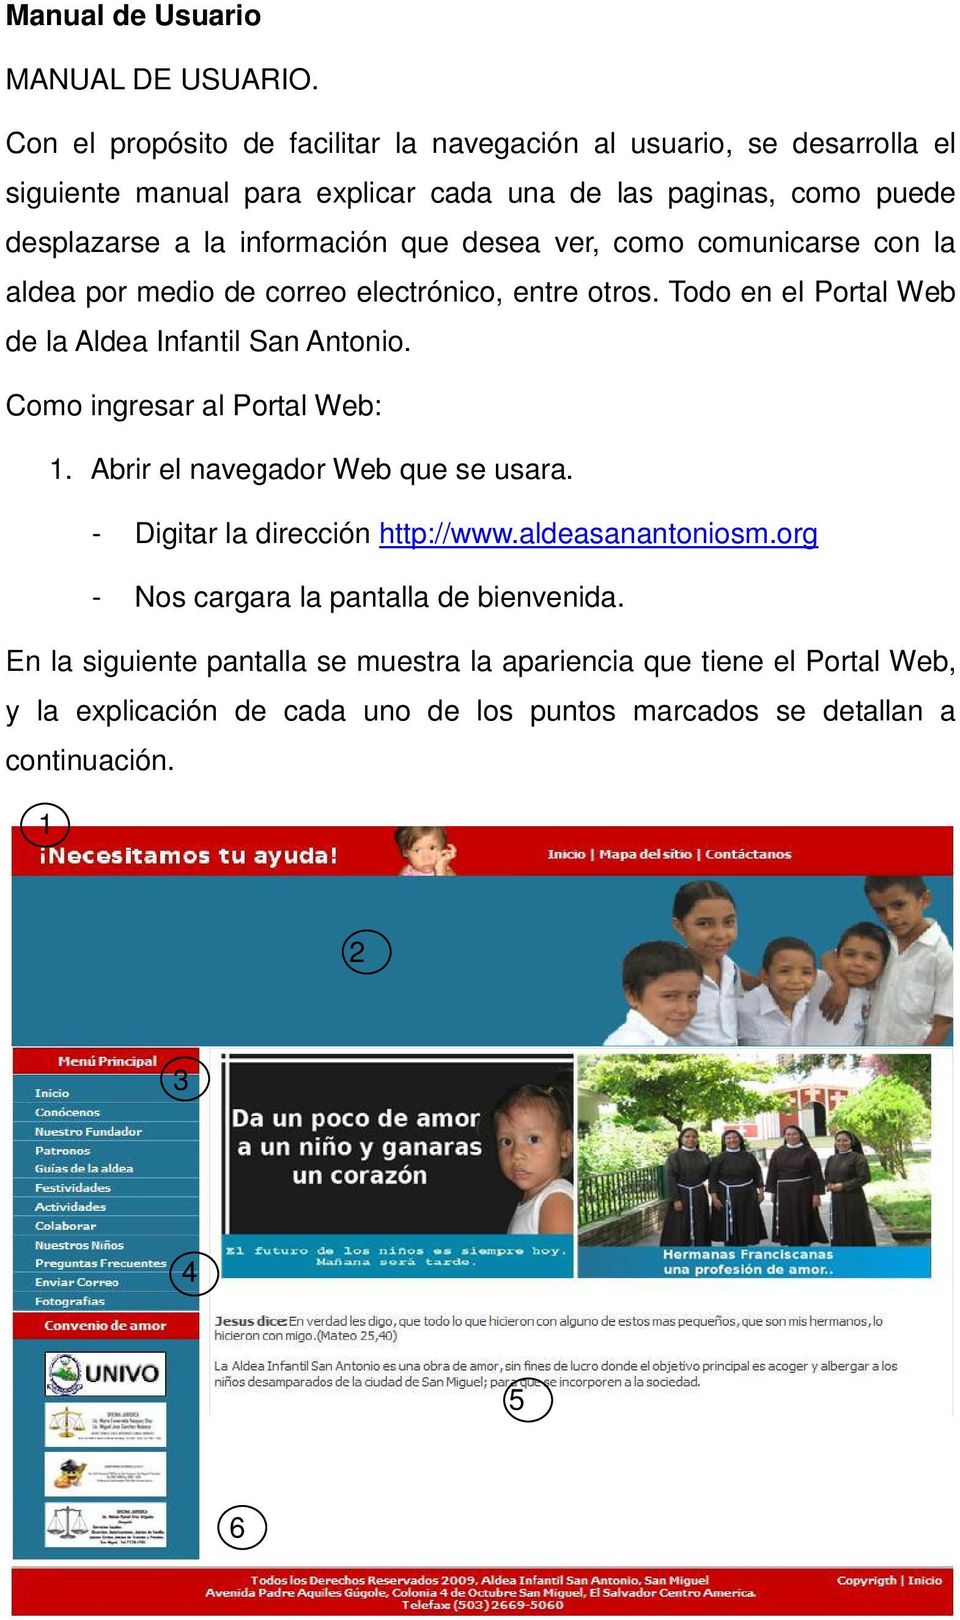 que desea ver, como comunicarse con la aldea por medio de correo electrónico, entre otros. Todo en el Portal Web de la Aldea Infantil San Antonio.